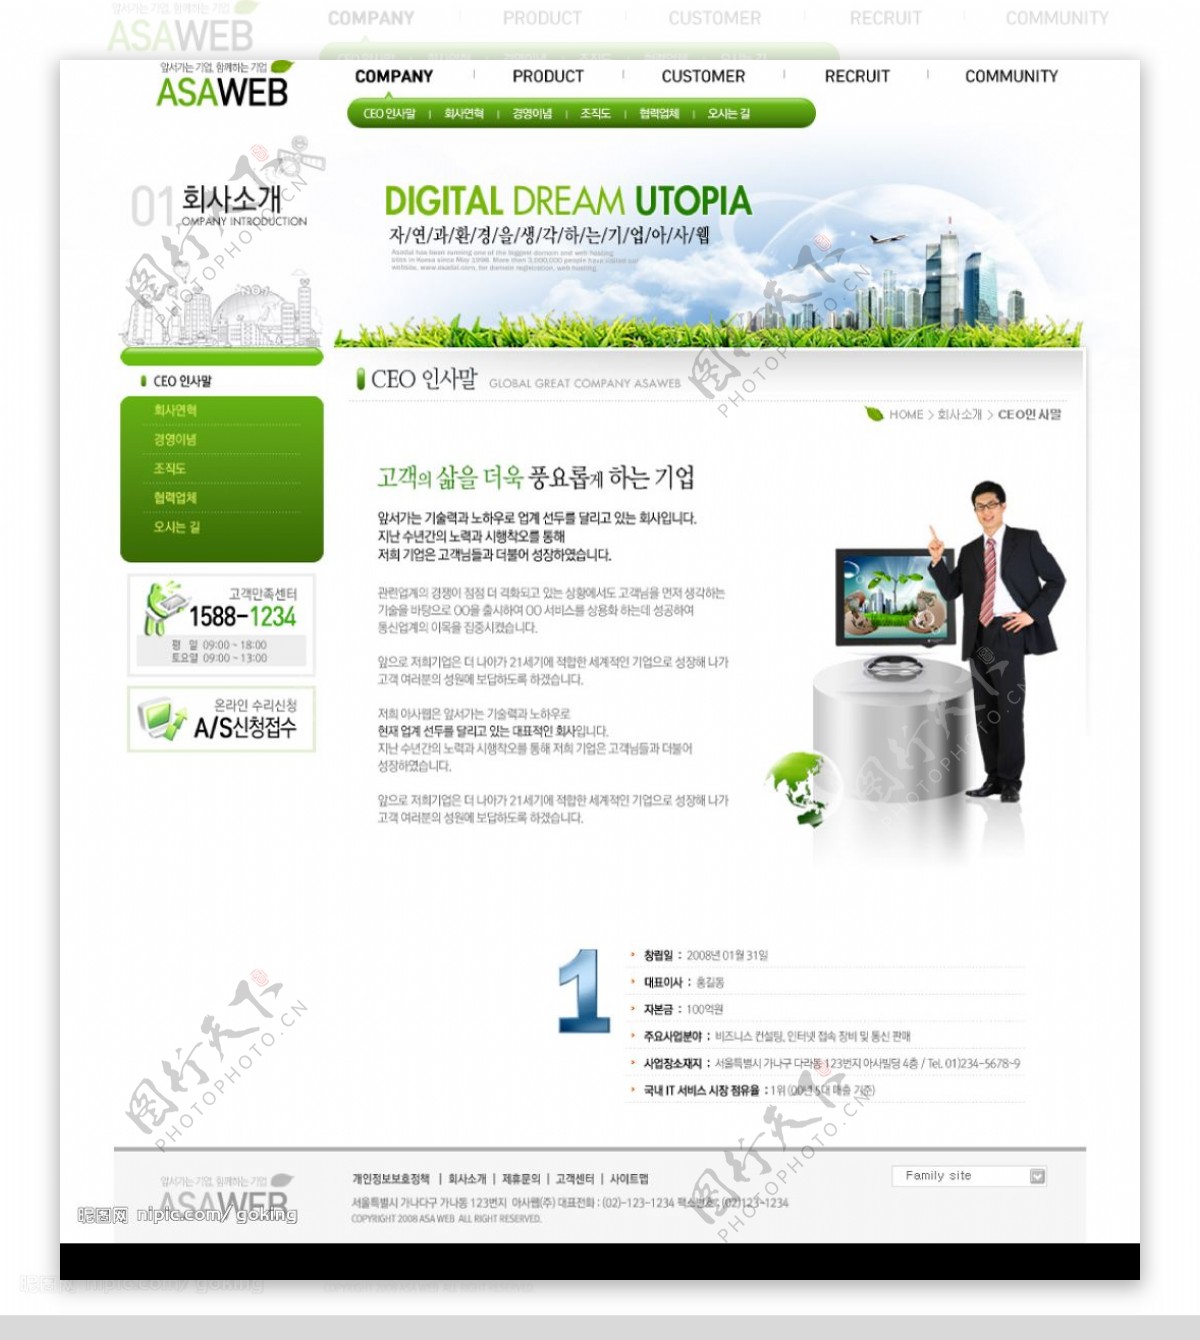 韩国数码生活馆网站套装图片